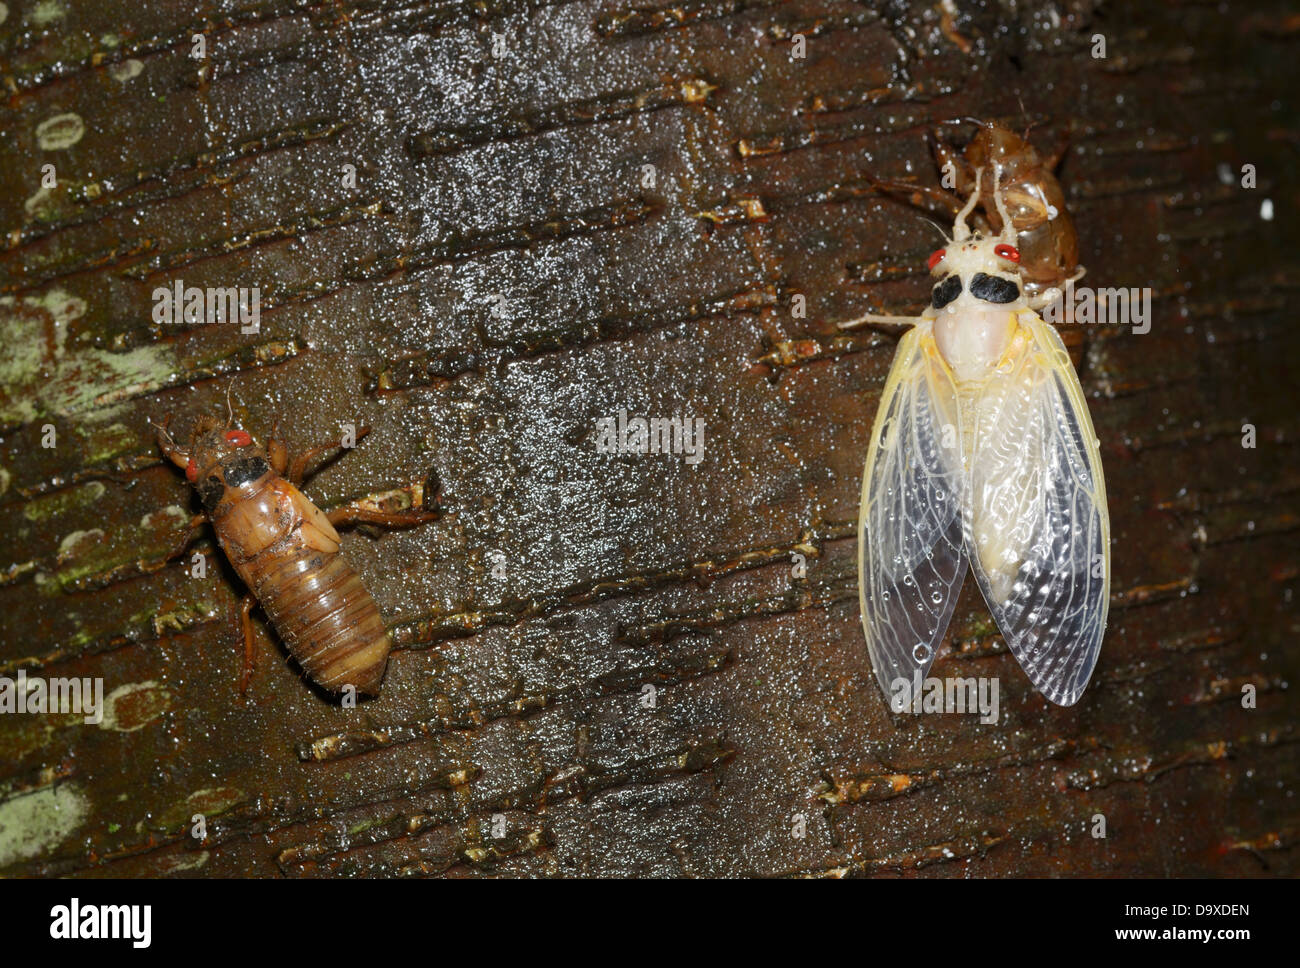 Periodica (17 anno), cicala Magicicada septendecim, recentemente emerso ninfa sulla sinistra e adulto solo molt di finitura sul lato destro Foto Stock